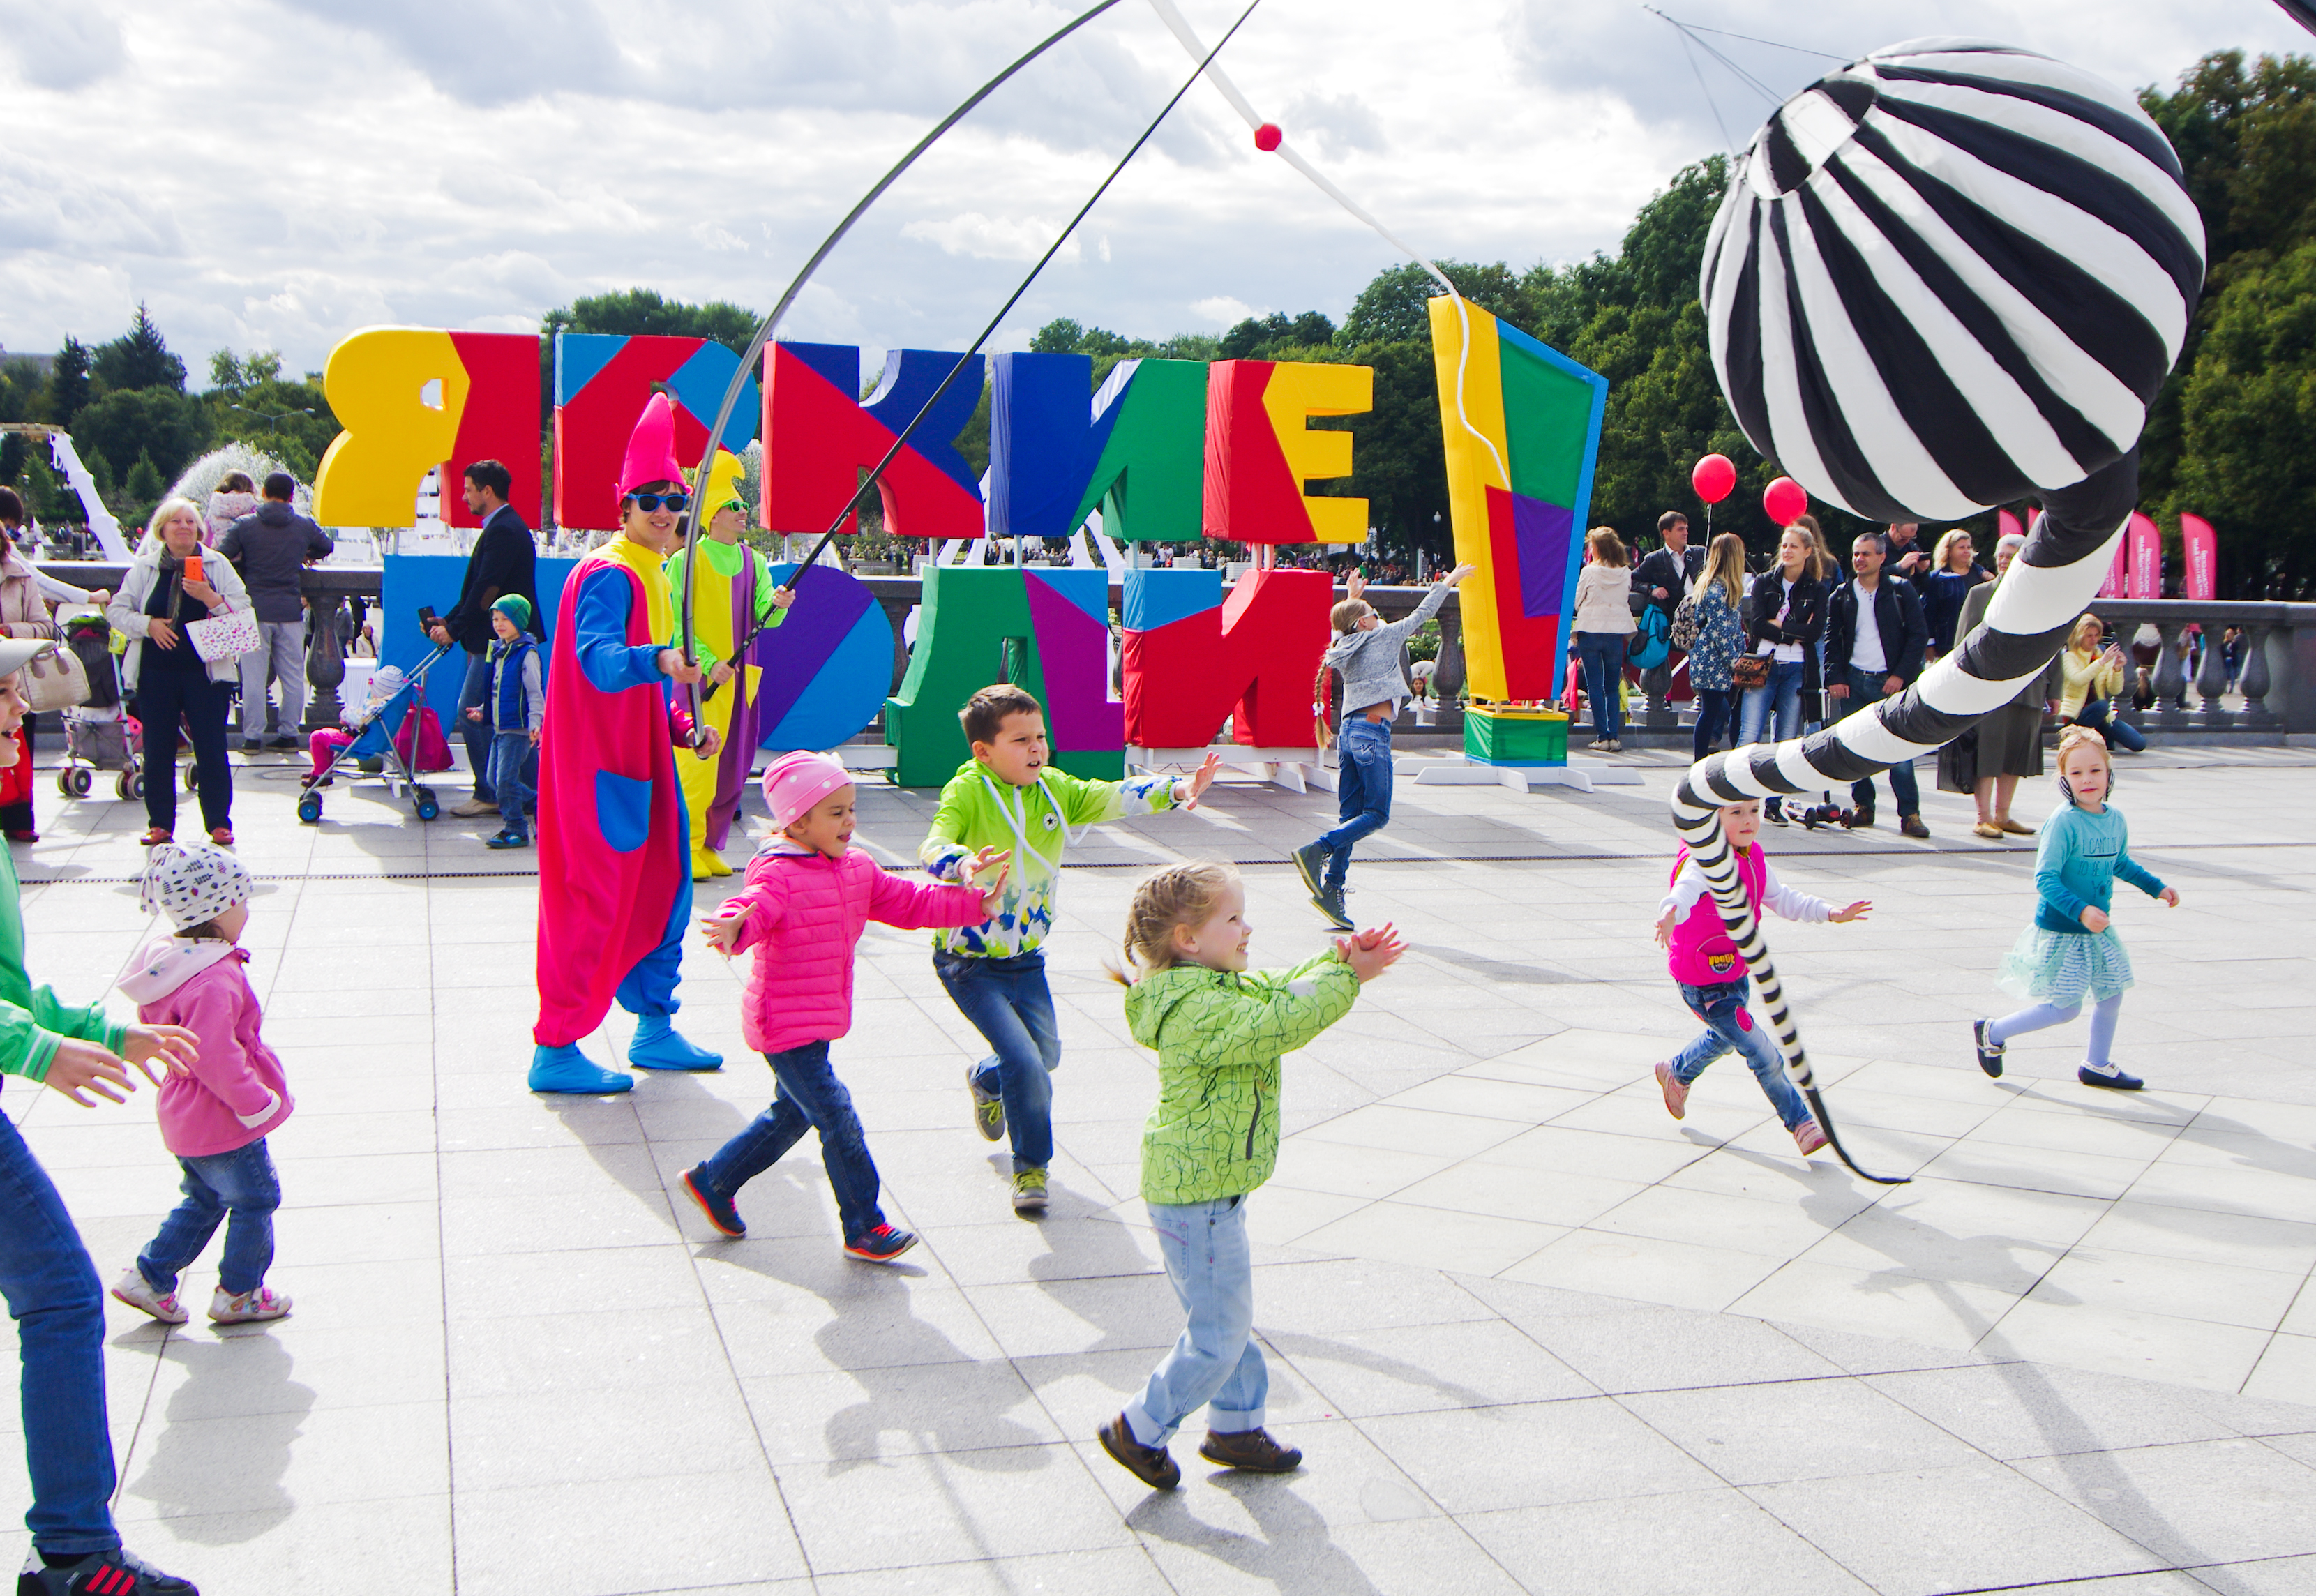 Городские развлечения. Творческий фестиваль «яркие люди» в «Музеоне». Праздник в парке. Развлекательные площадки для детей. Интерактивные площадки для детей на празднике.